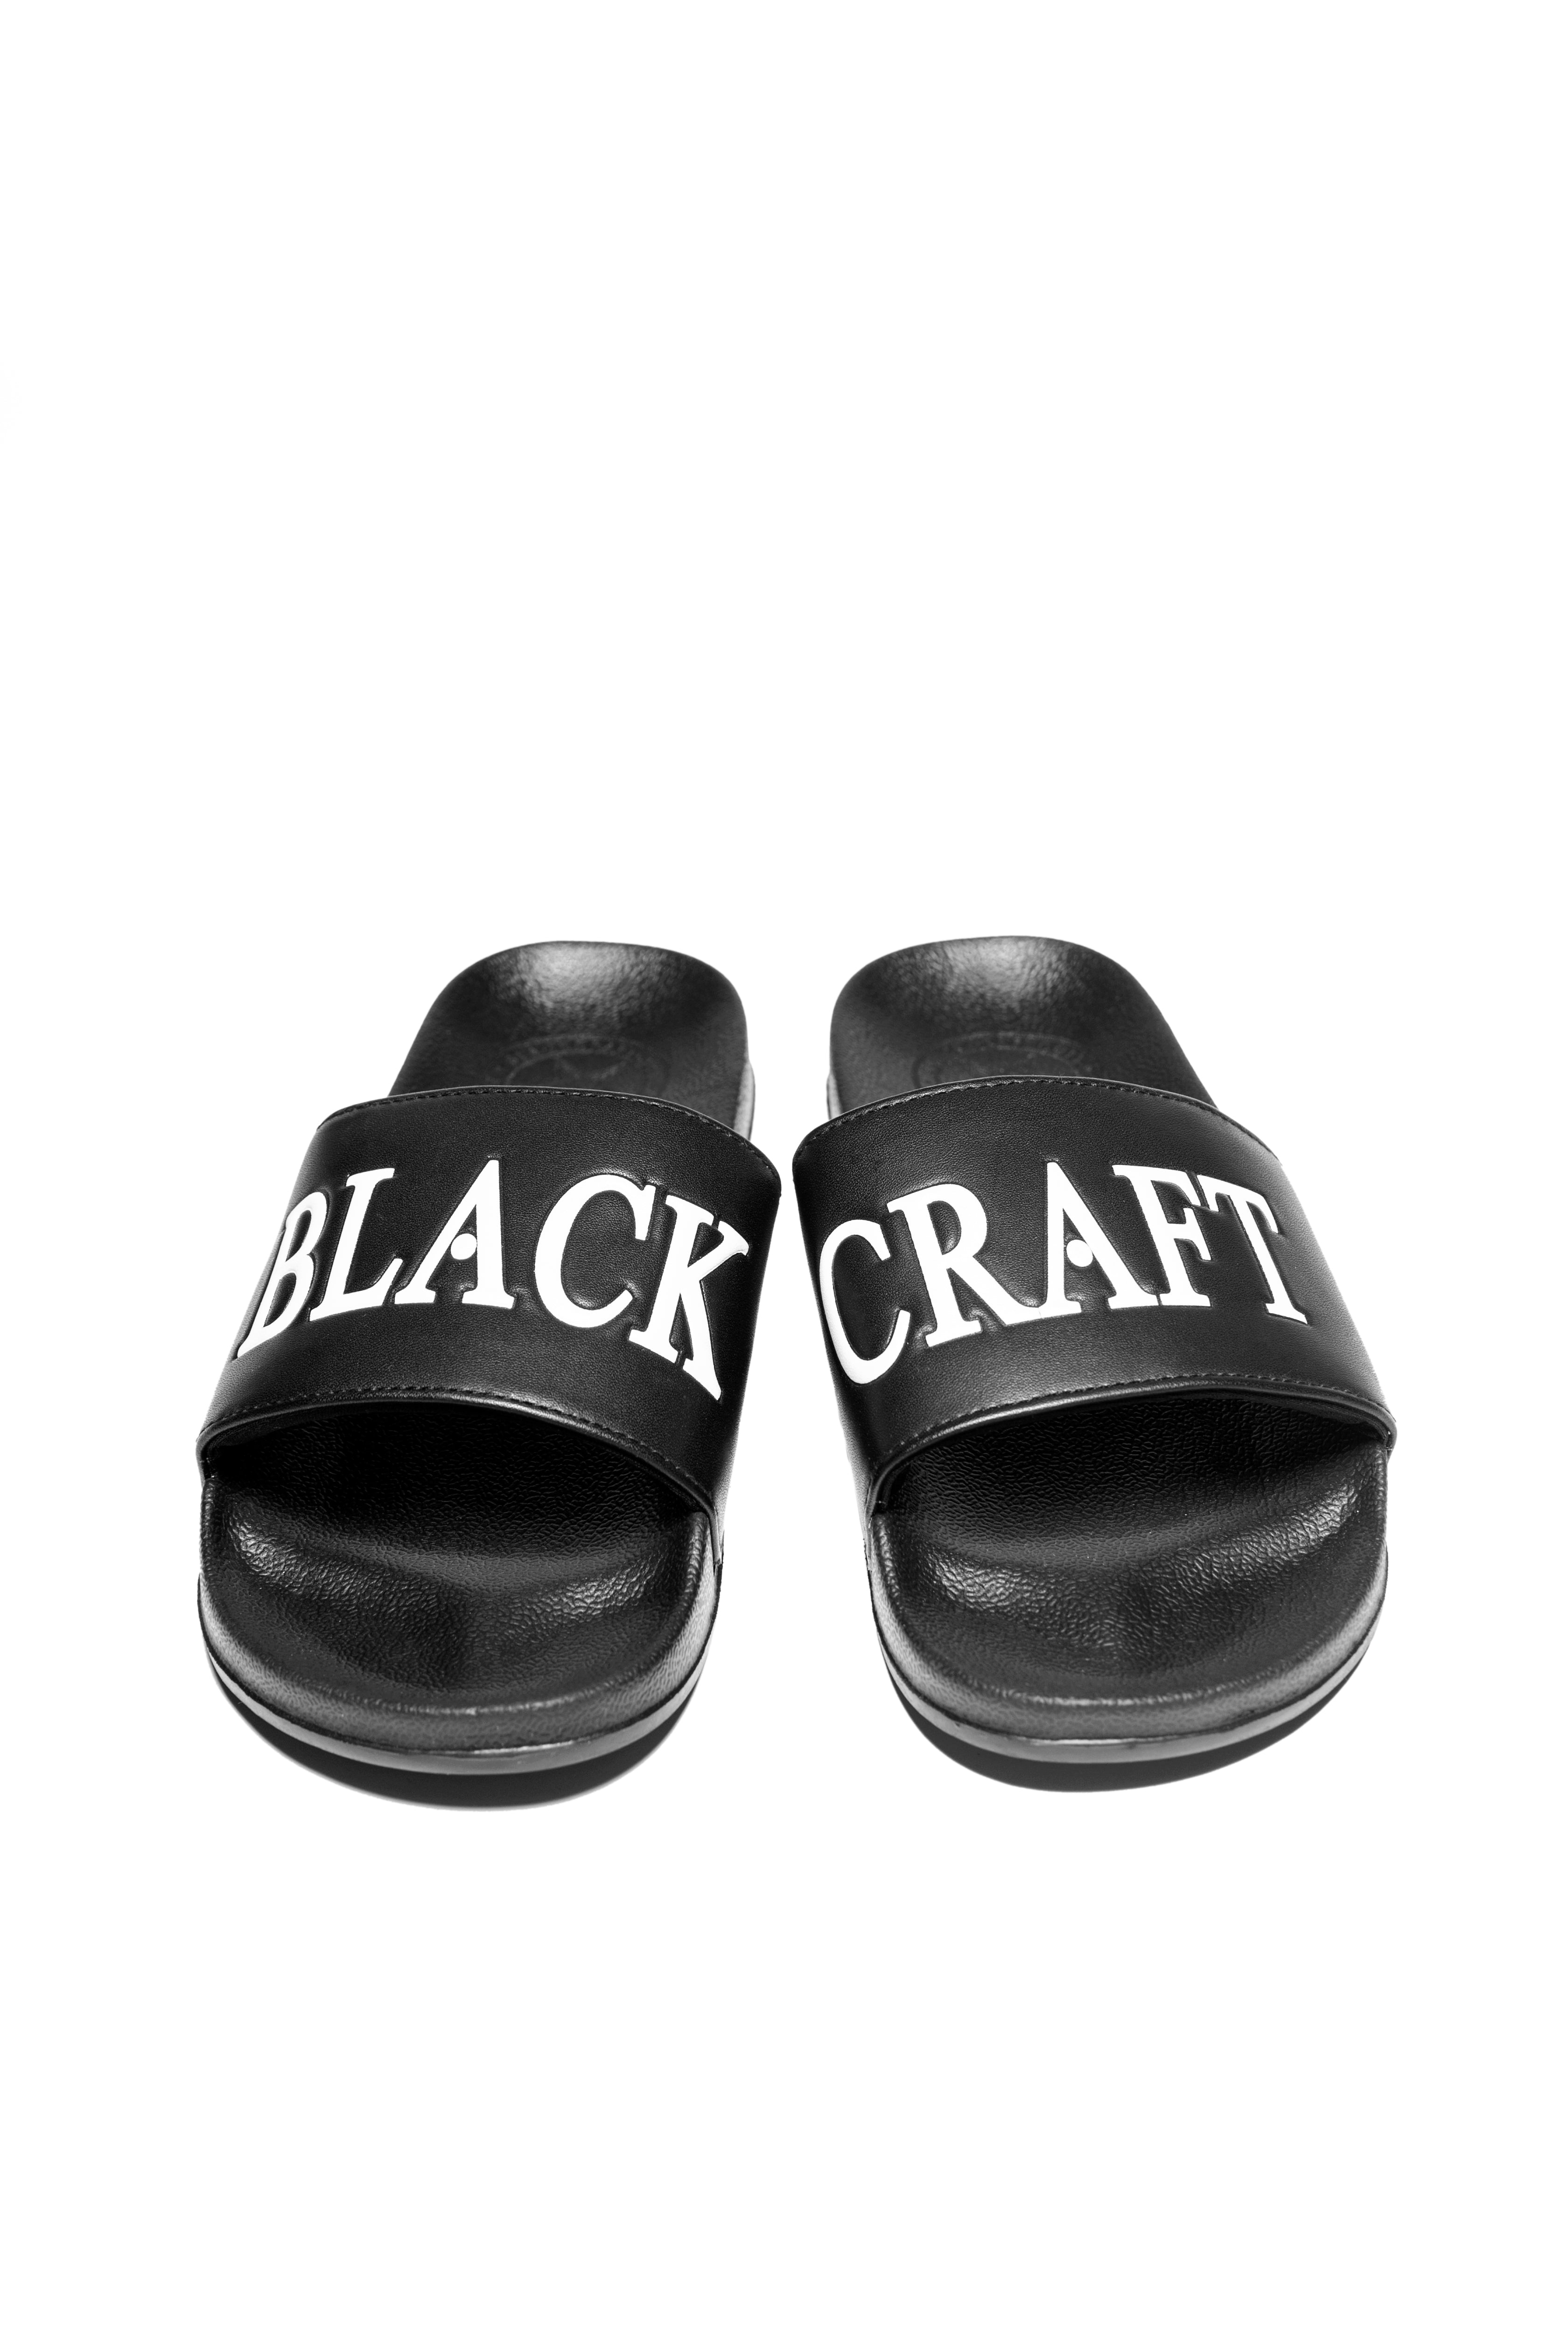 Blackcraft - Pool Slides – Blackcraft Cult